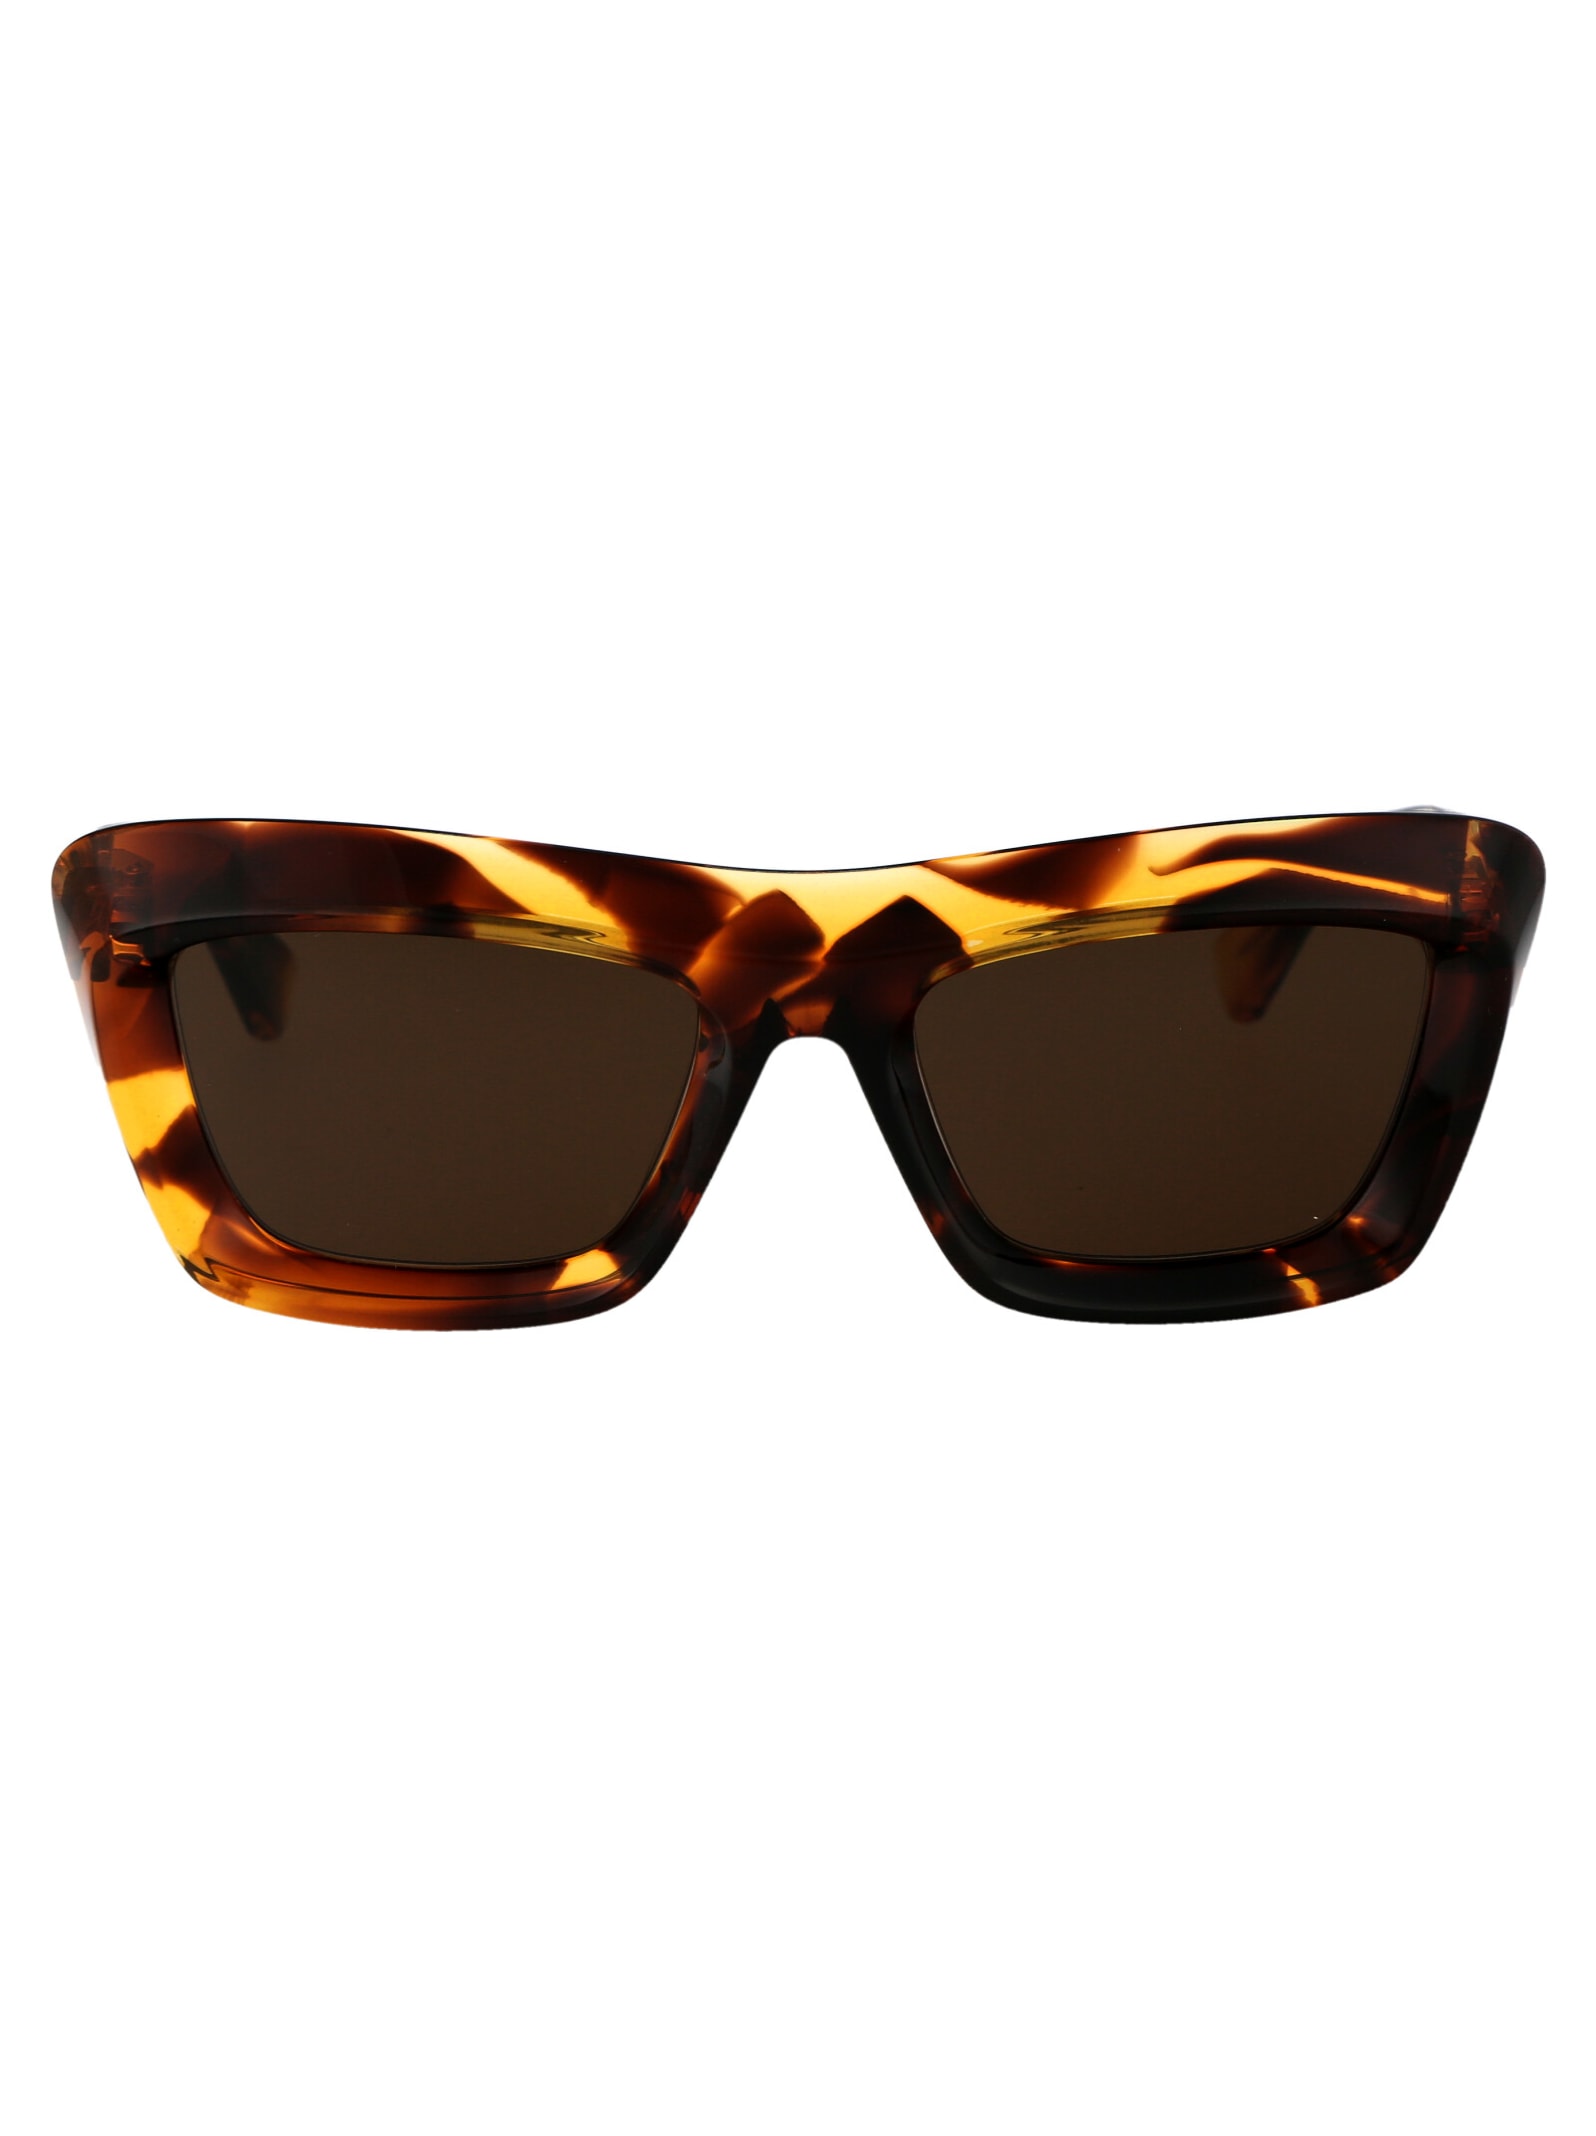 Bv1283s Sunglasses